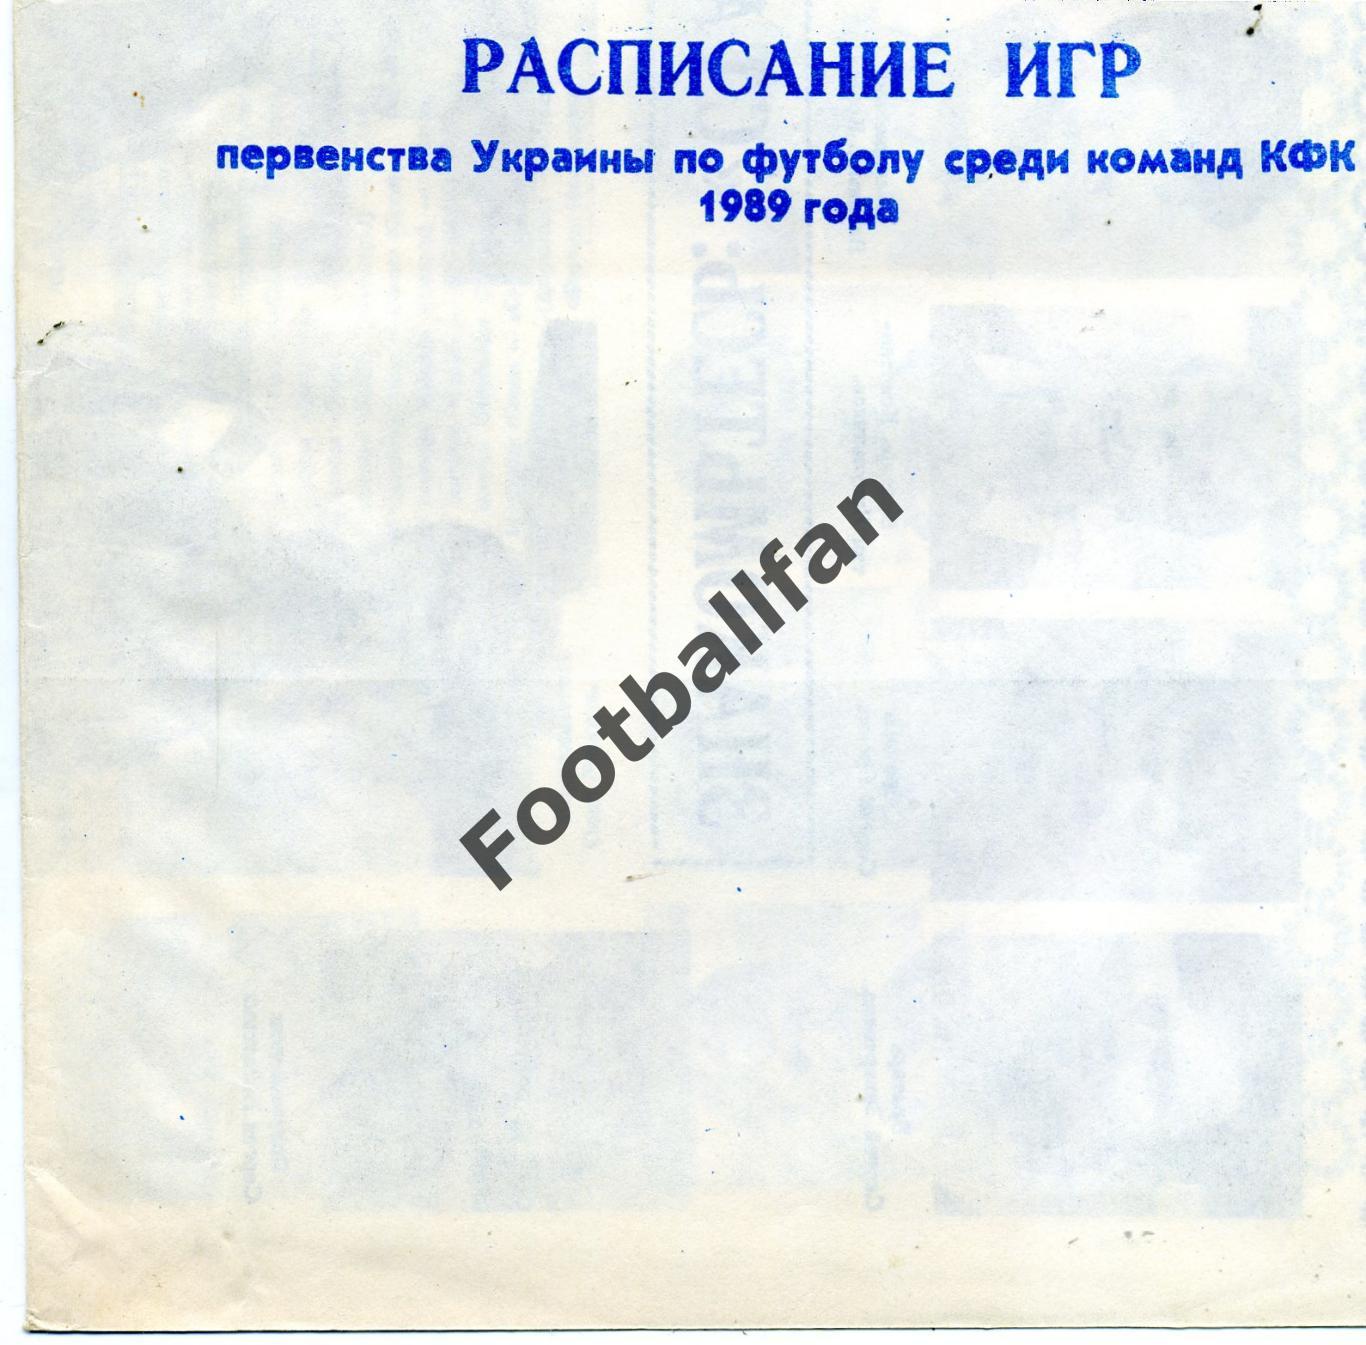 Сталь Коммунарск ( Алчевск ) . 1989 год.